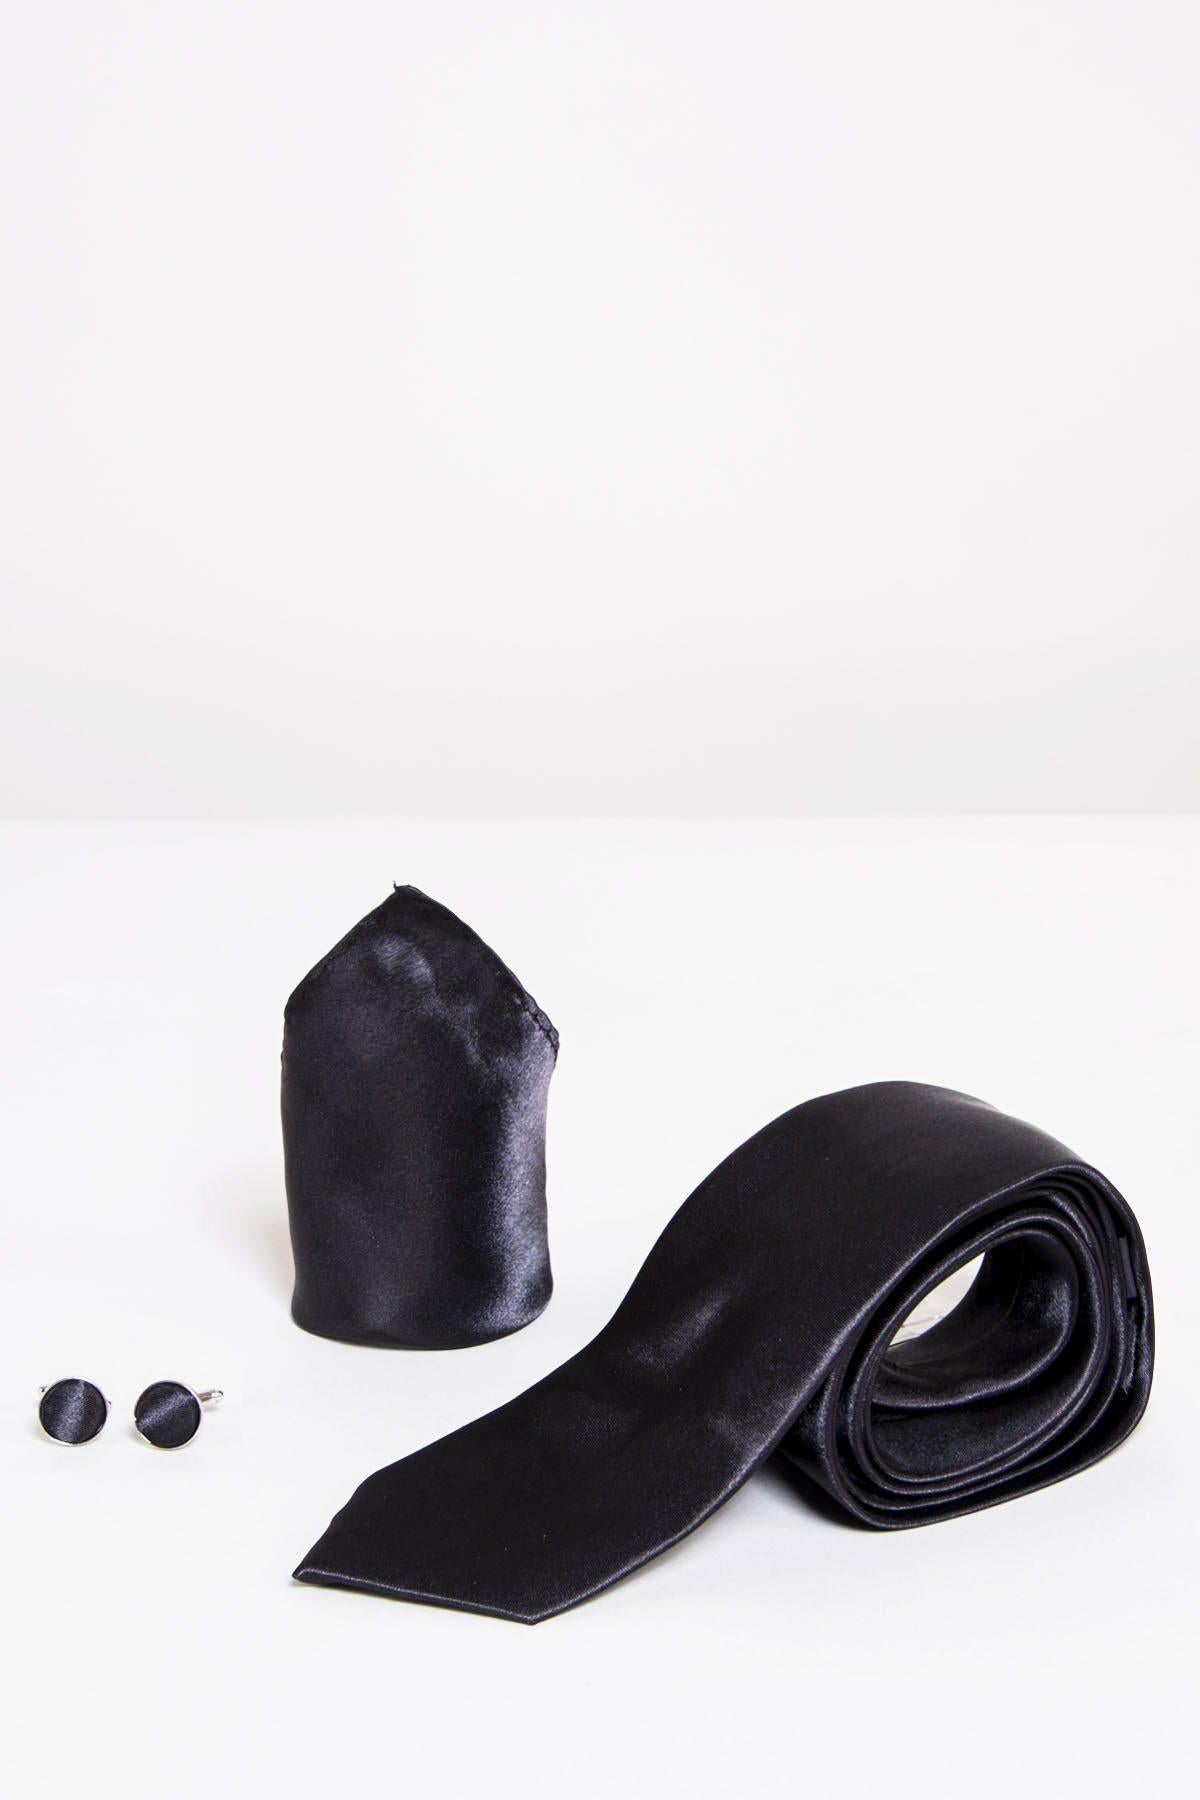 ST - Satin Tie, Cufflink & Pocket Square Set In Black